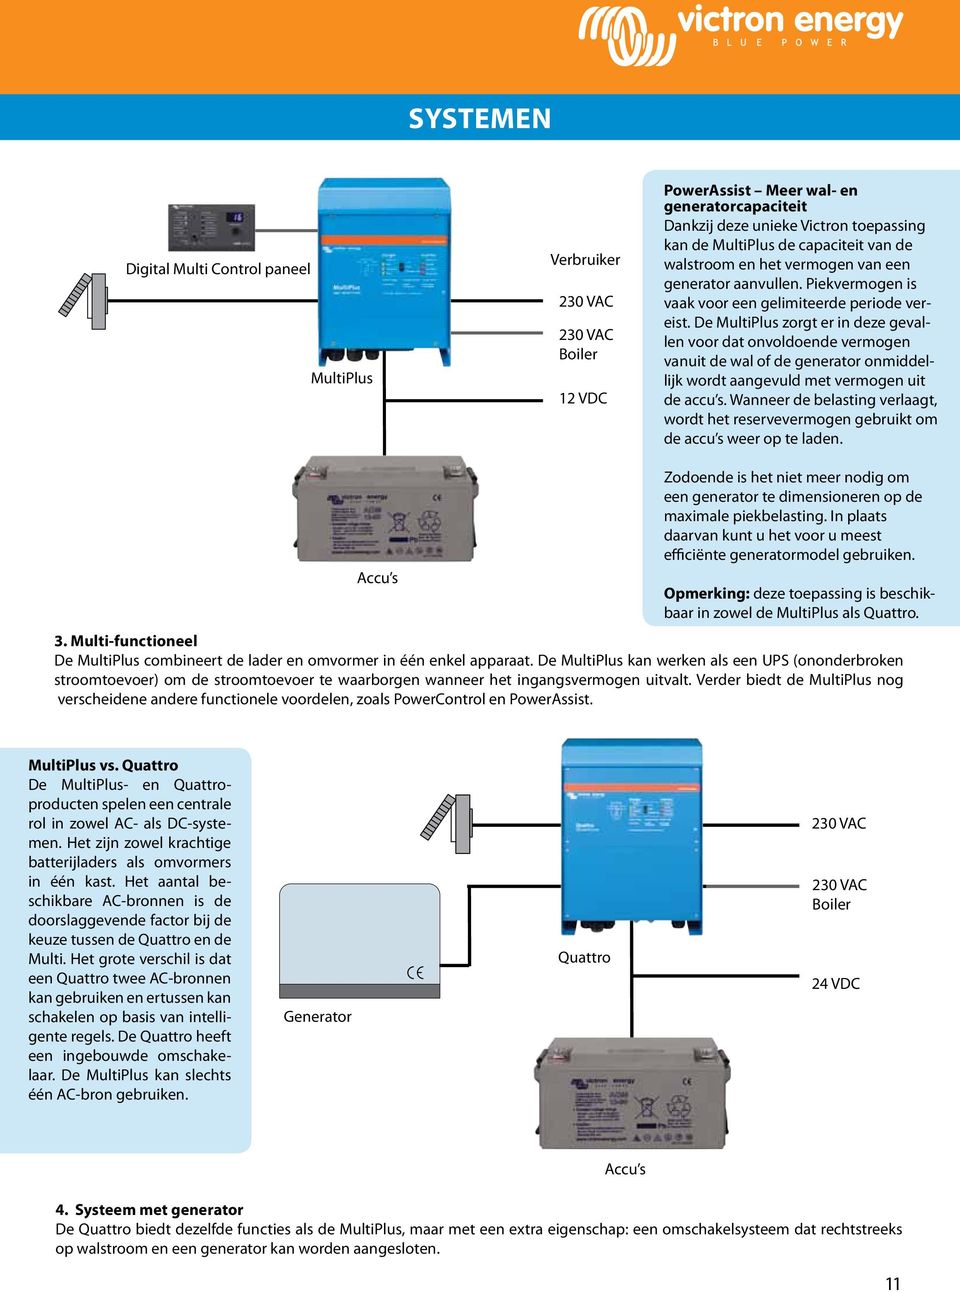 De MultiPlus zorgt er in deze gevallen voor dat onvoldoende vermogen vanuit de wal of de generator onmiddellijk wordt aangevuld met vermogen uit de accu s.